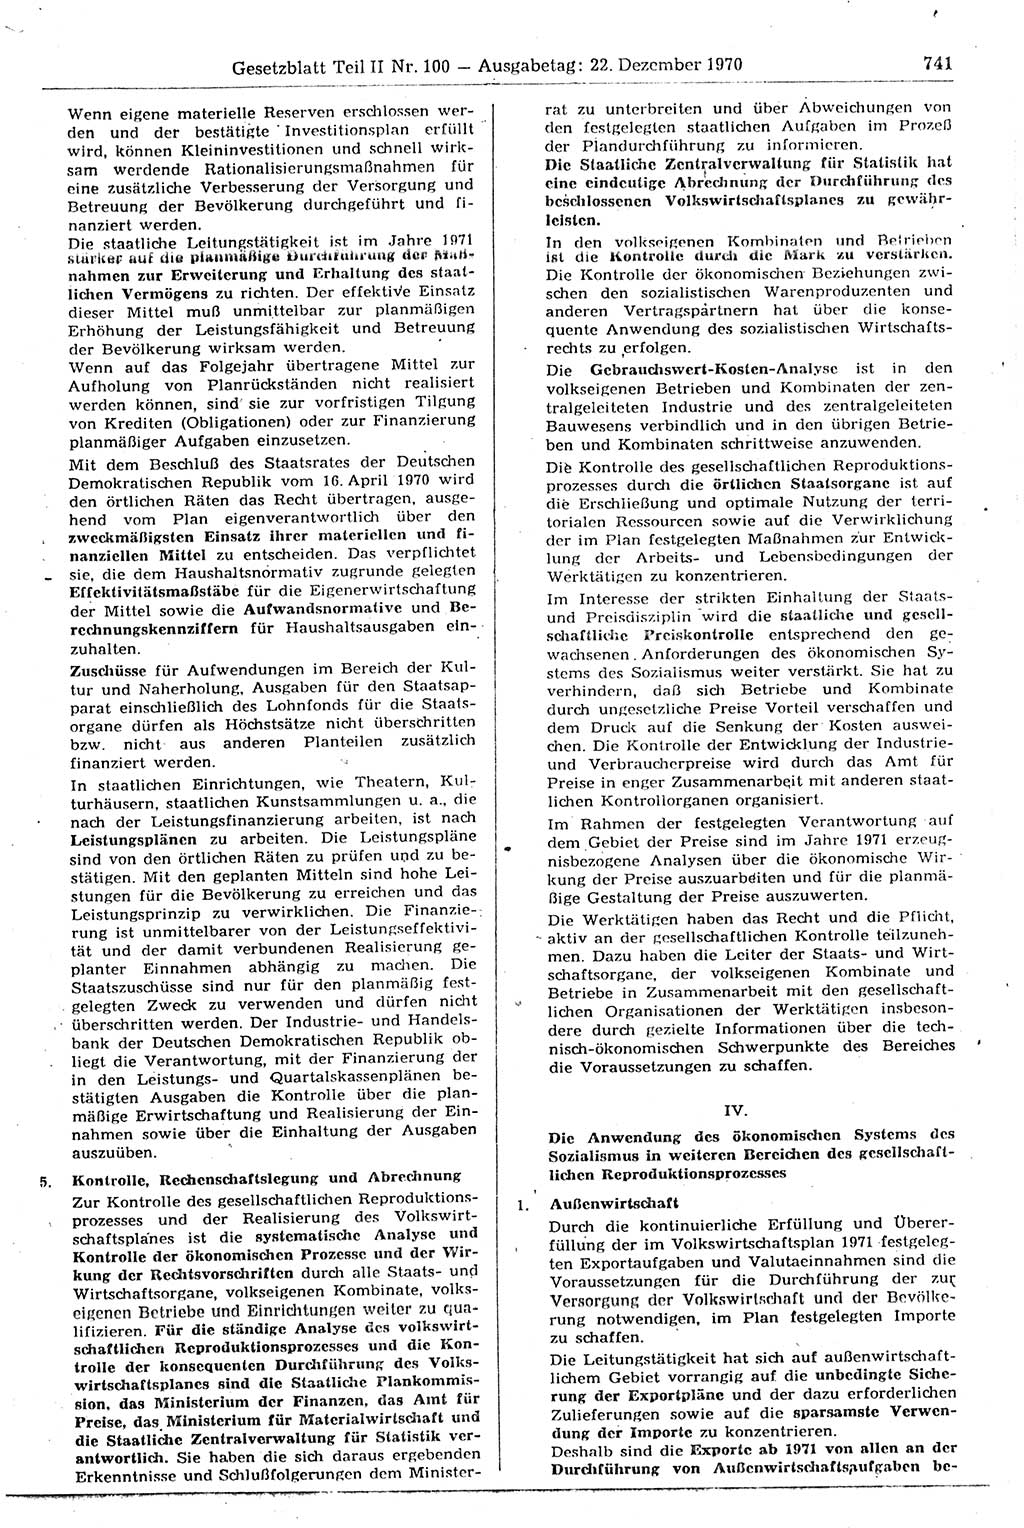 Gesetzblatt (GBl.) der Deutschen Demokratischen Republik (DDR) Teil ⅠⅠ 1970, Seite 741 (GBl. DDR ⅠⅠ 1970, S. 741)